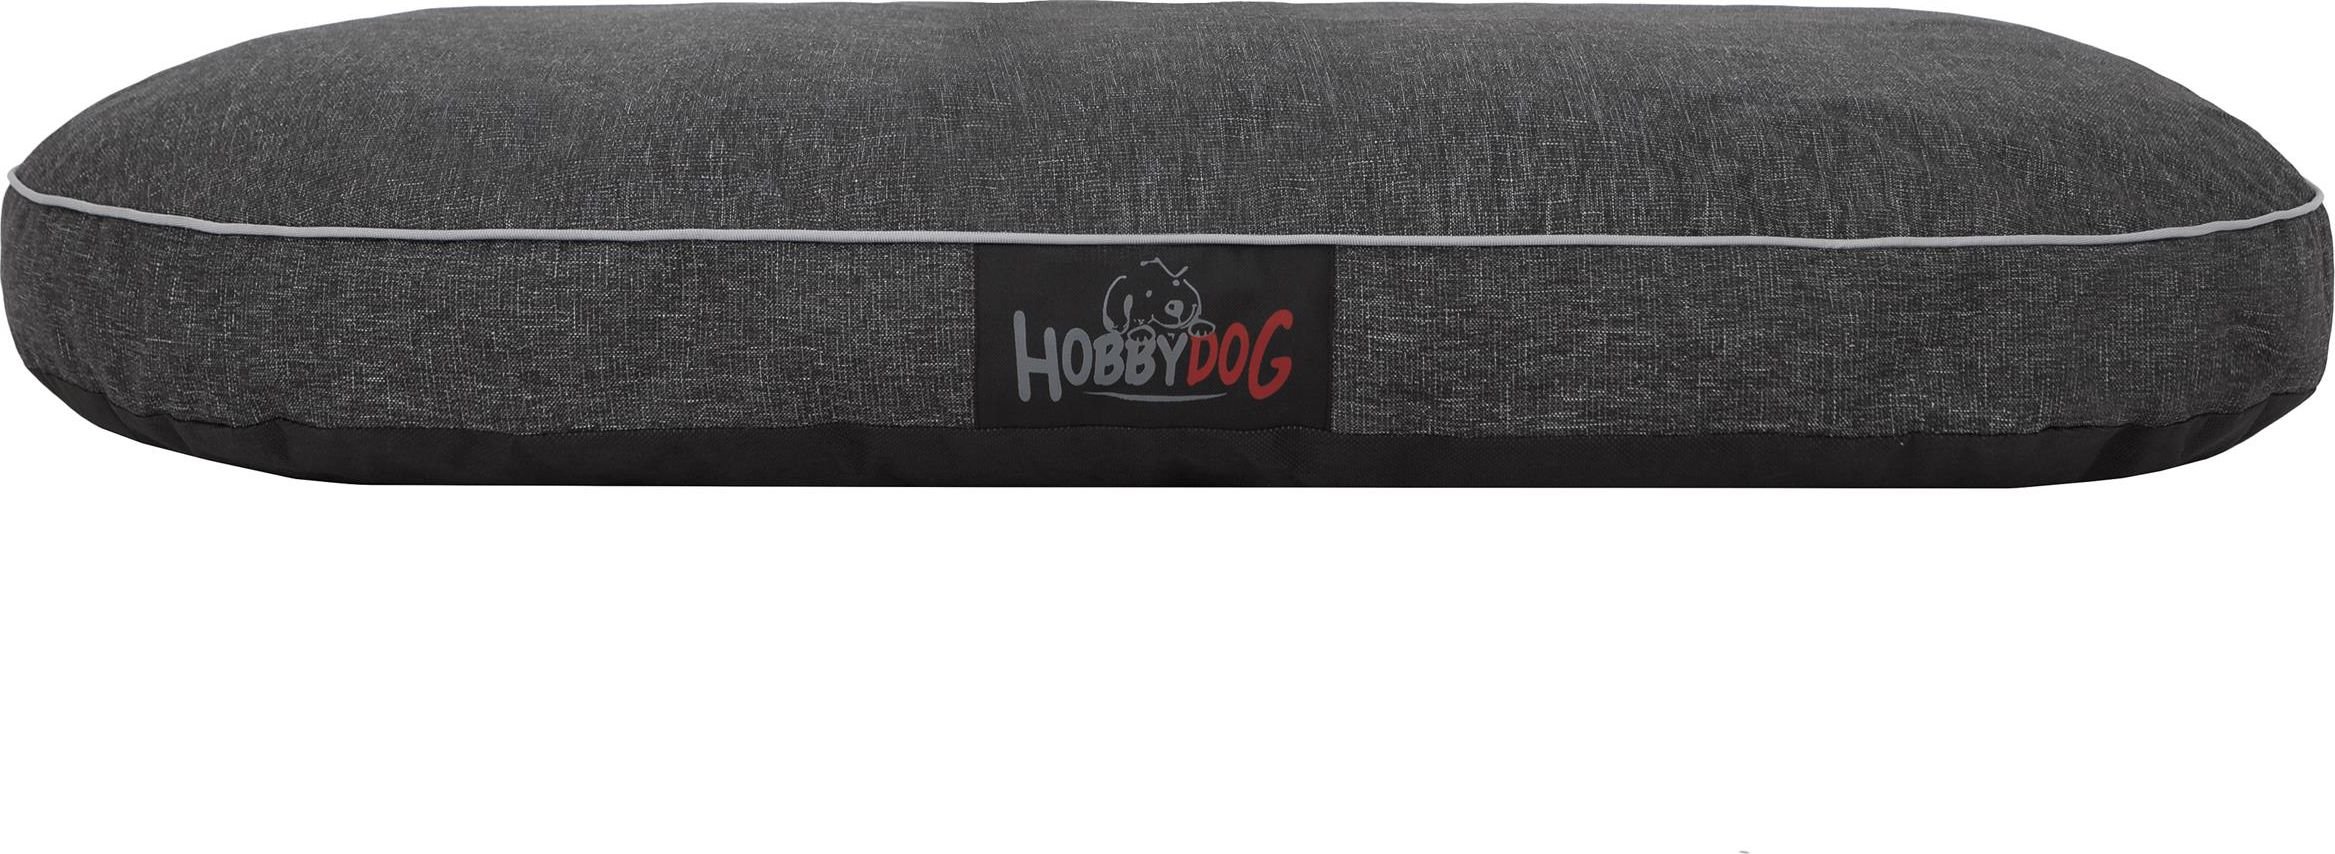 Saltea Hobbydog Oval negru ekolen marimea XL